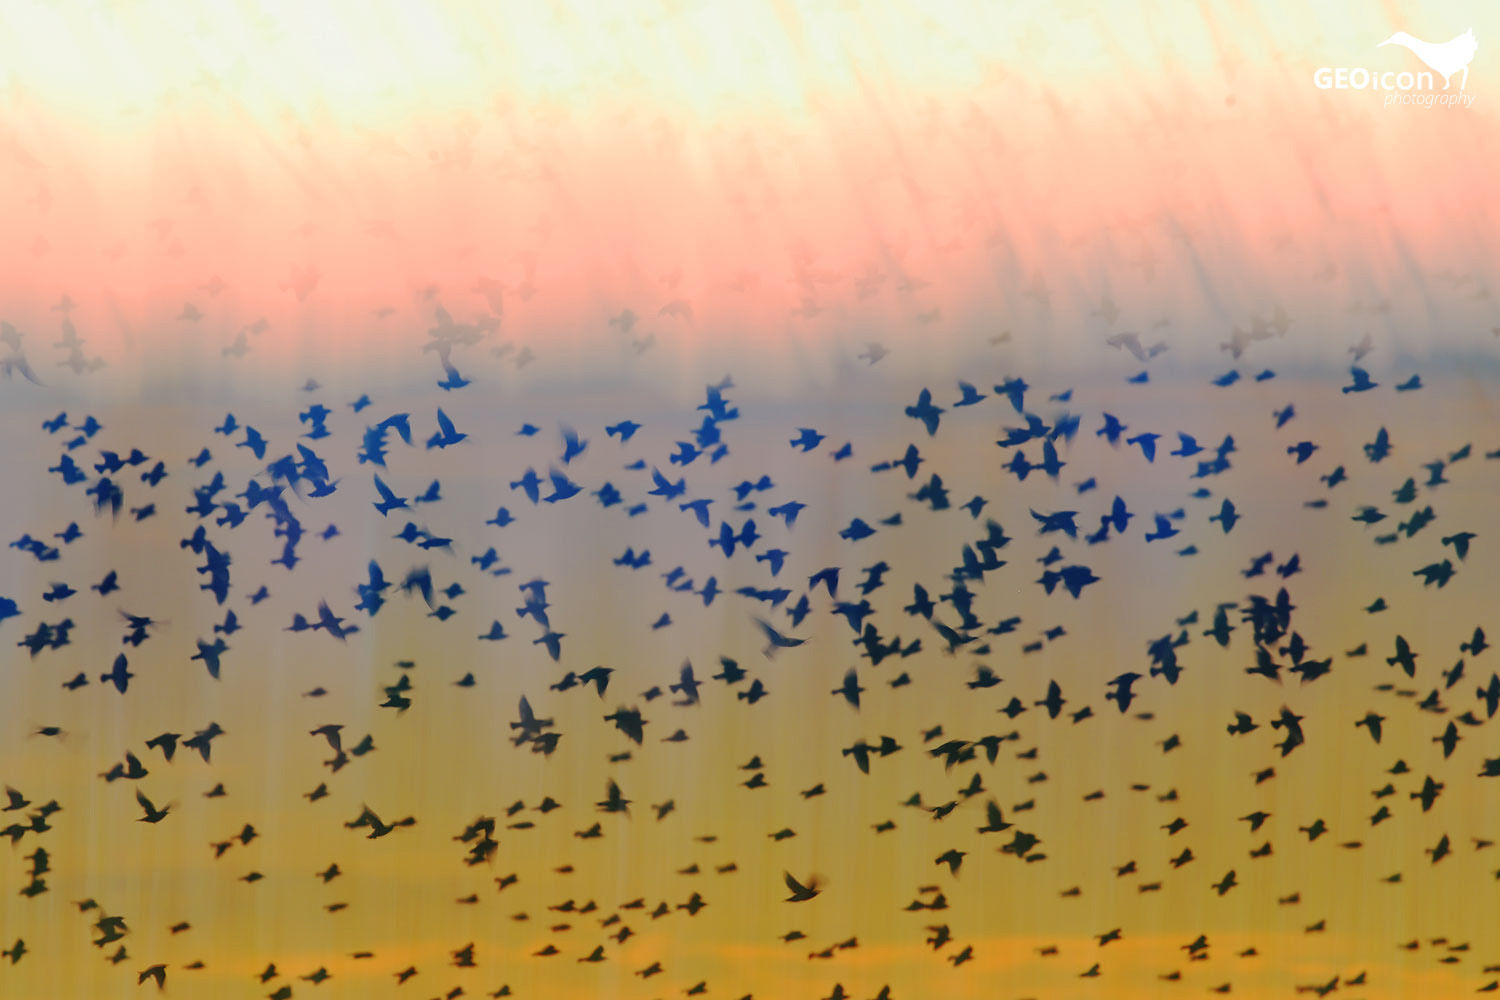 A flock of Starlings / hejno špačků obecných (Sturnus vulgaris)